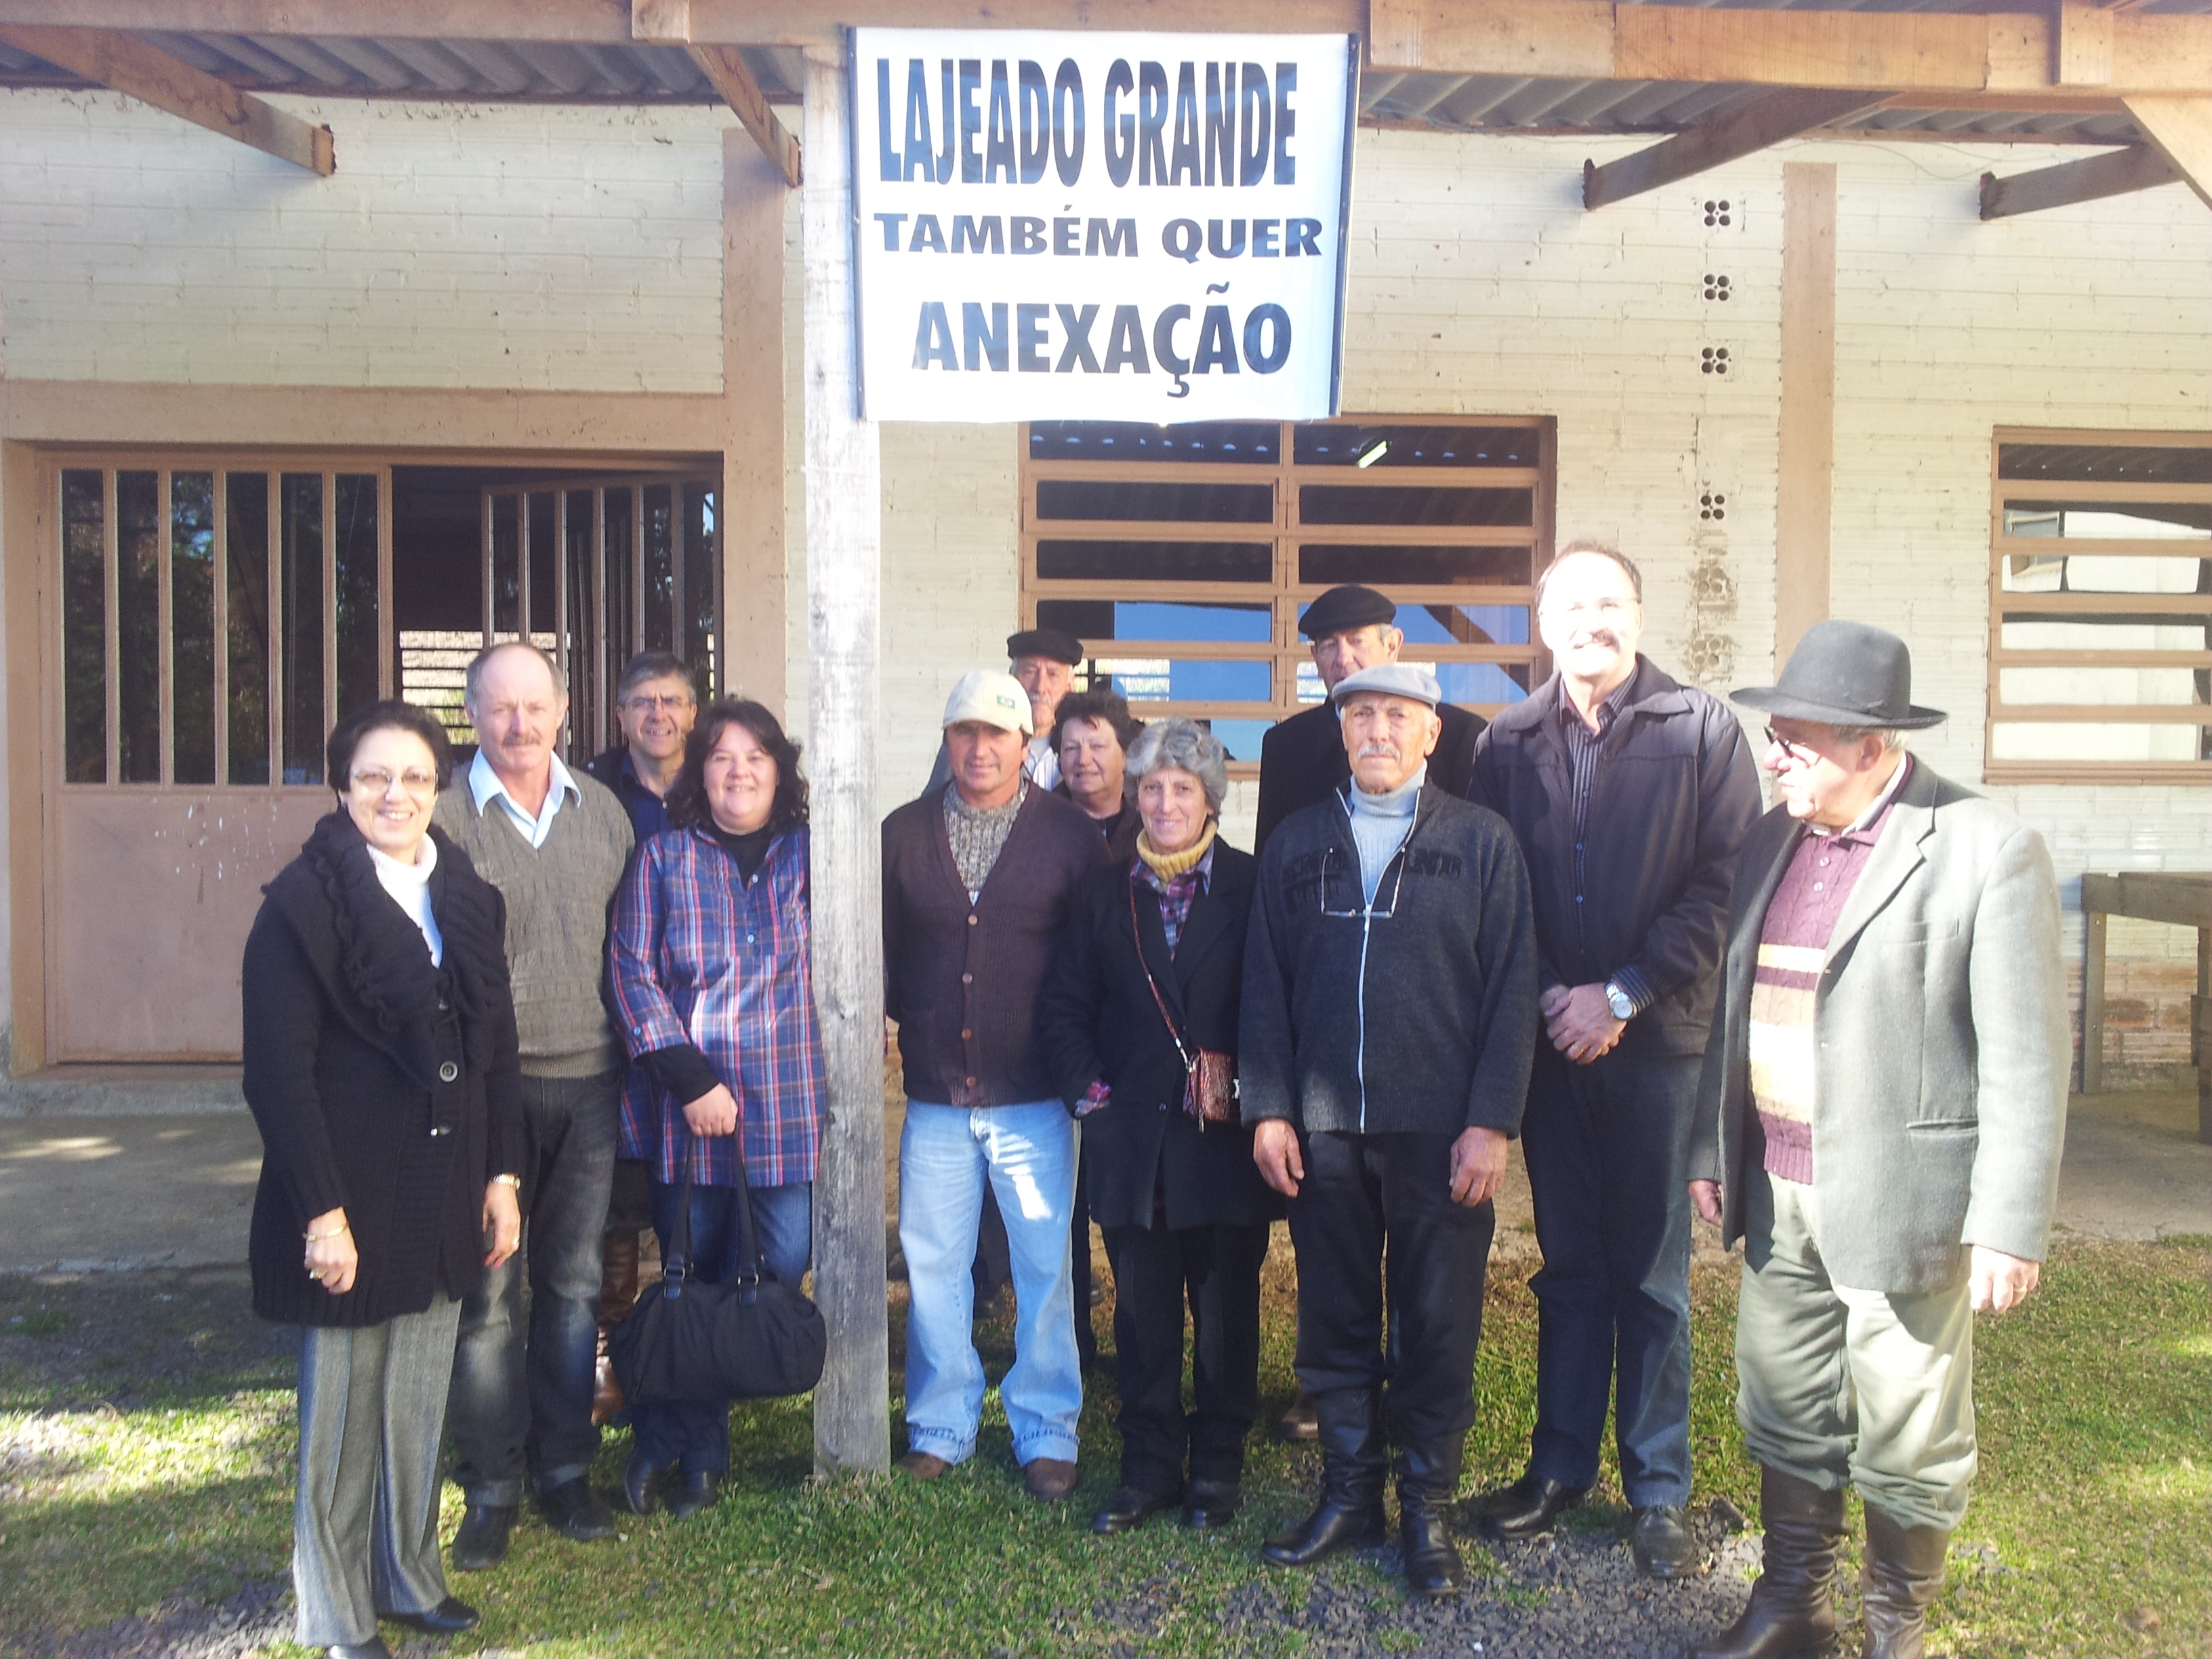 Vereador Mauro Pereira leva apoio a moradores de Lajeado Grande